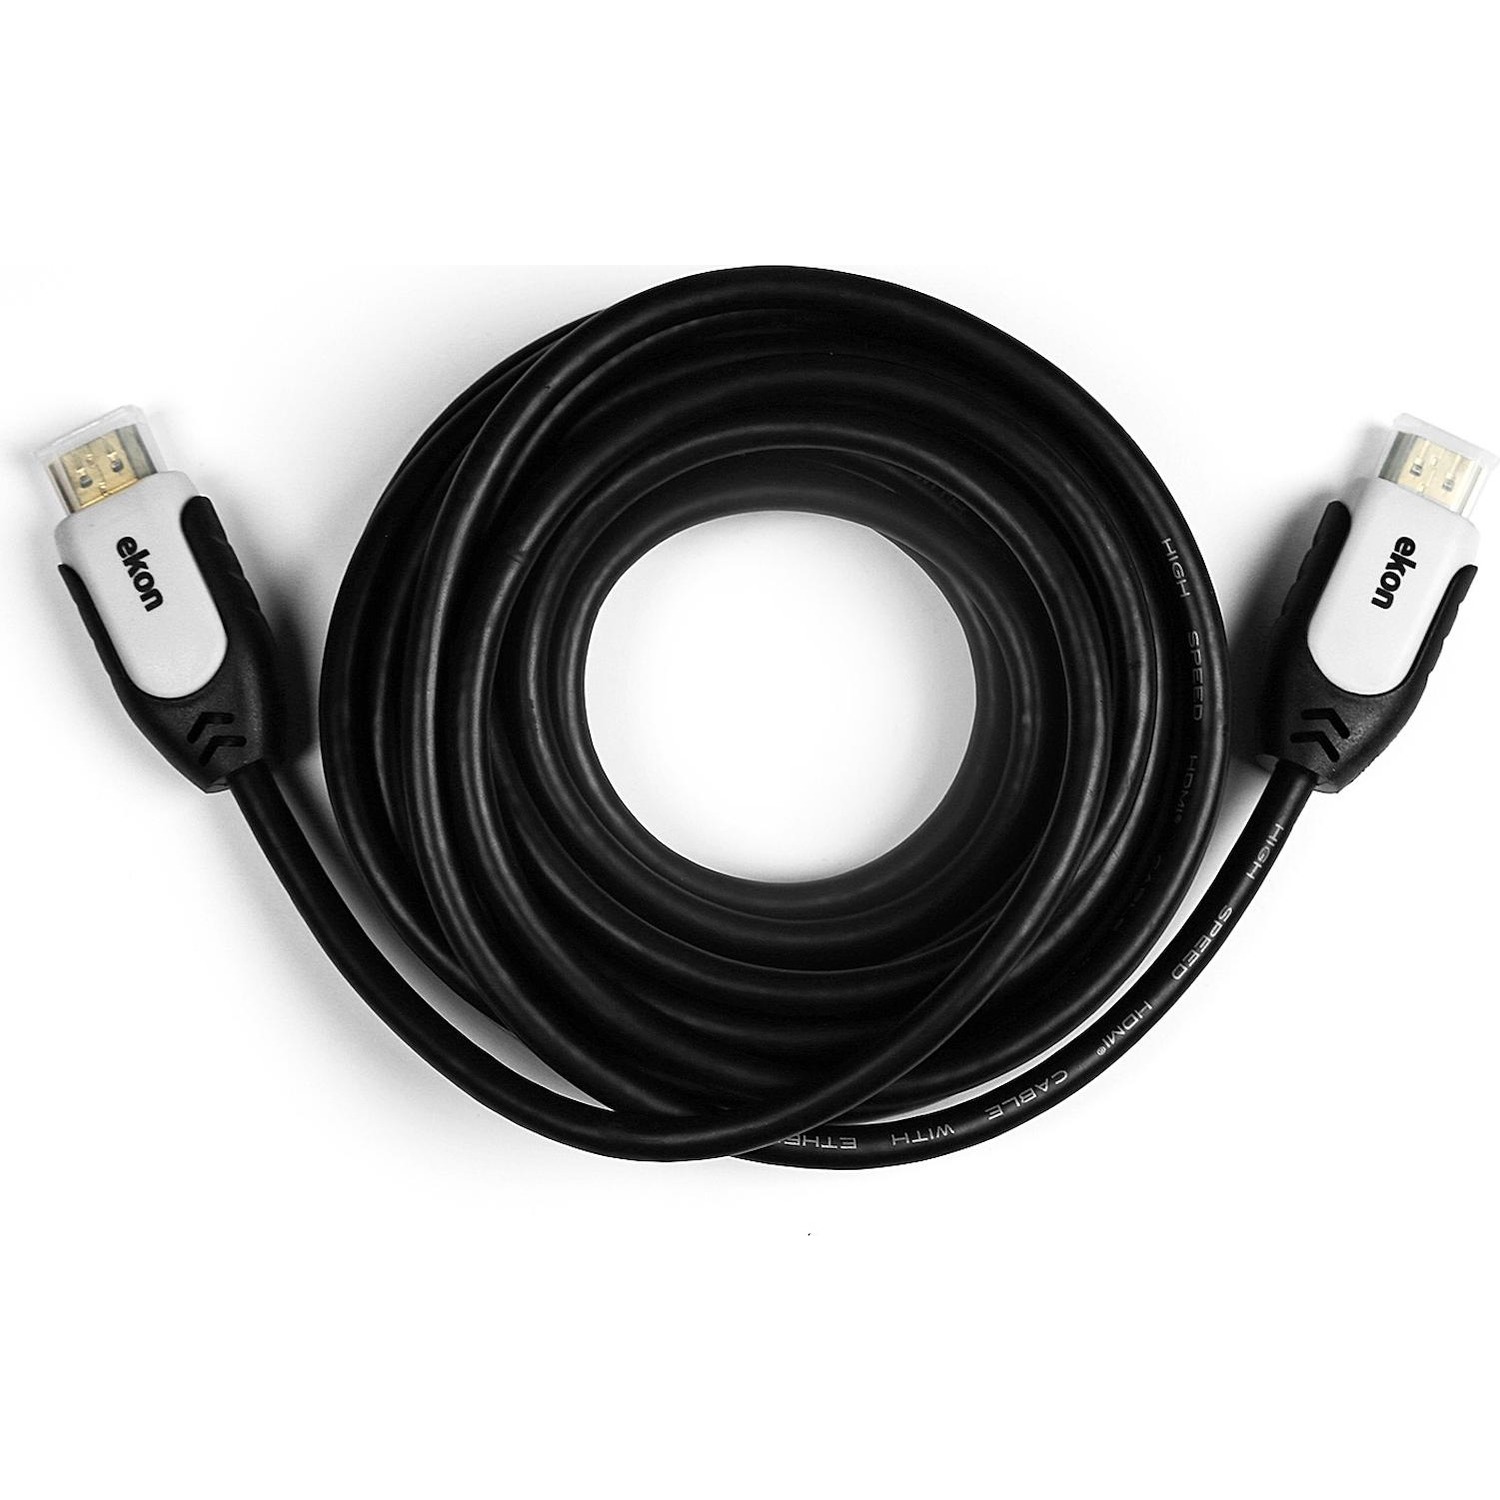 Immagine per Cavo HDMI v.1.4 alta velocità con ethernet        connettori maschio - maschio, lunghezza 5 metri da DIMOStore